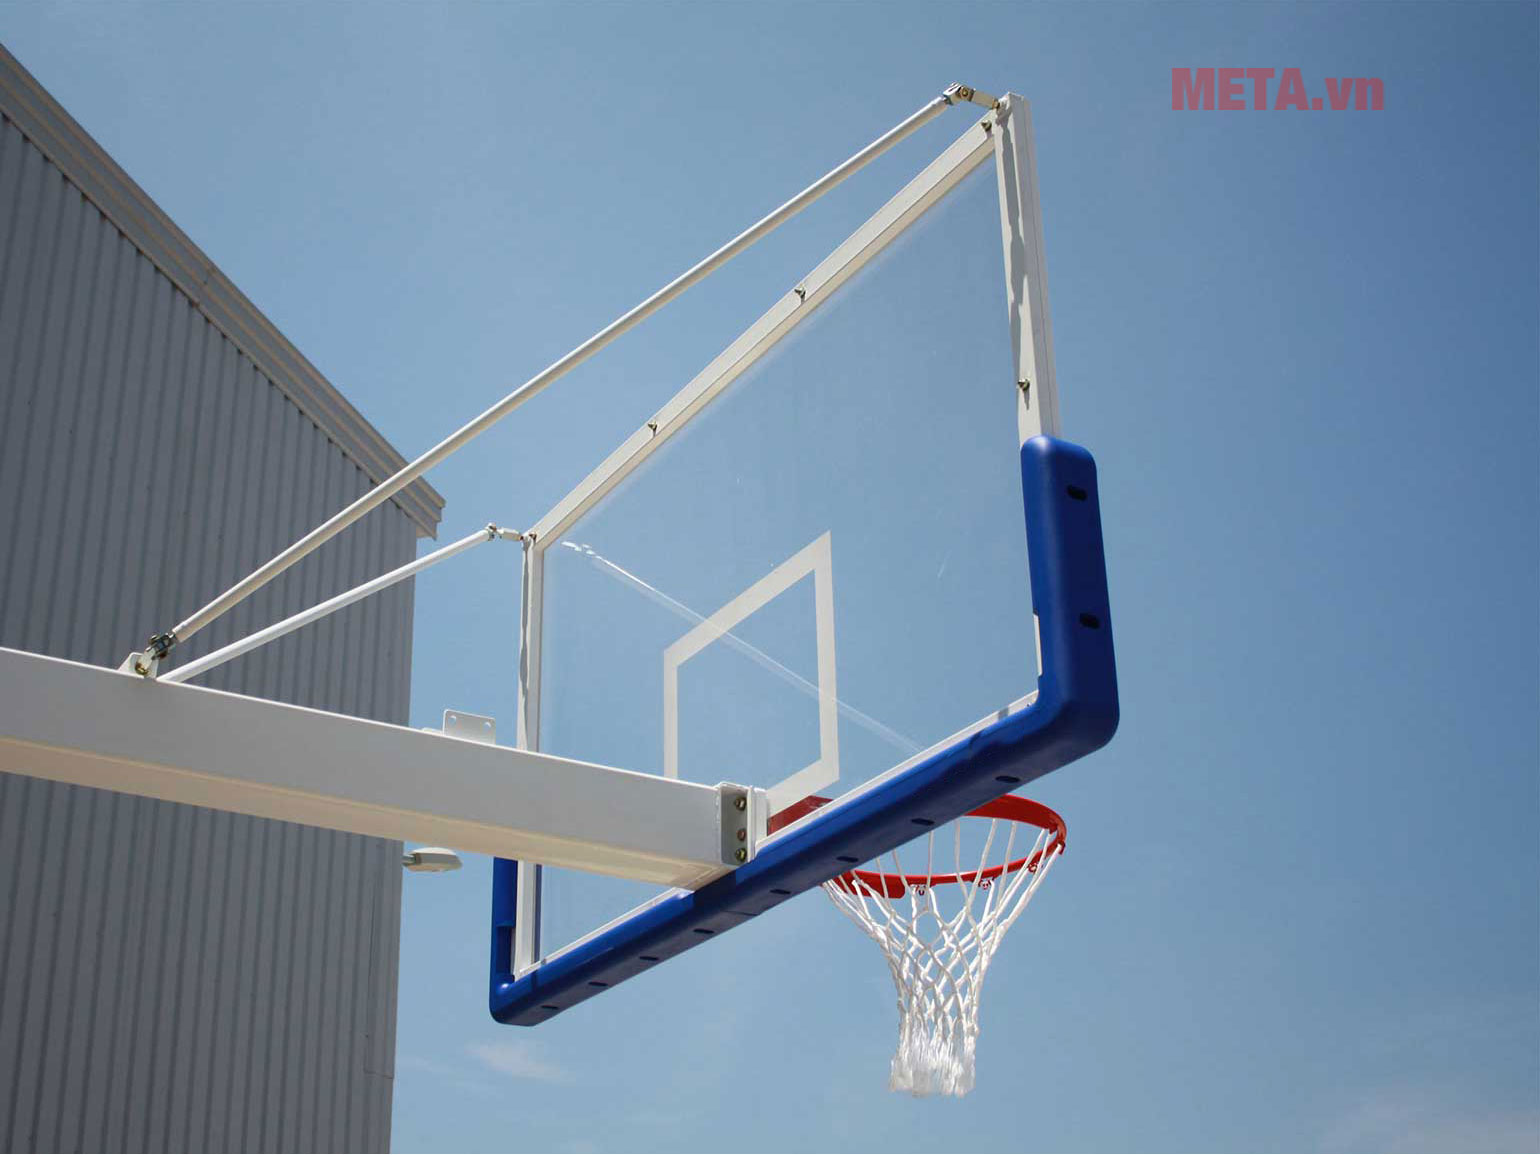 Trụ bóng rổ thi đấu di động S14645-CPT (Epic 225)